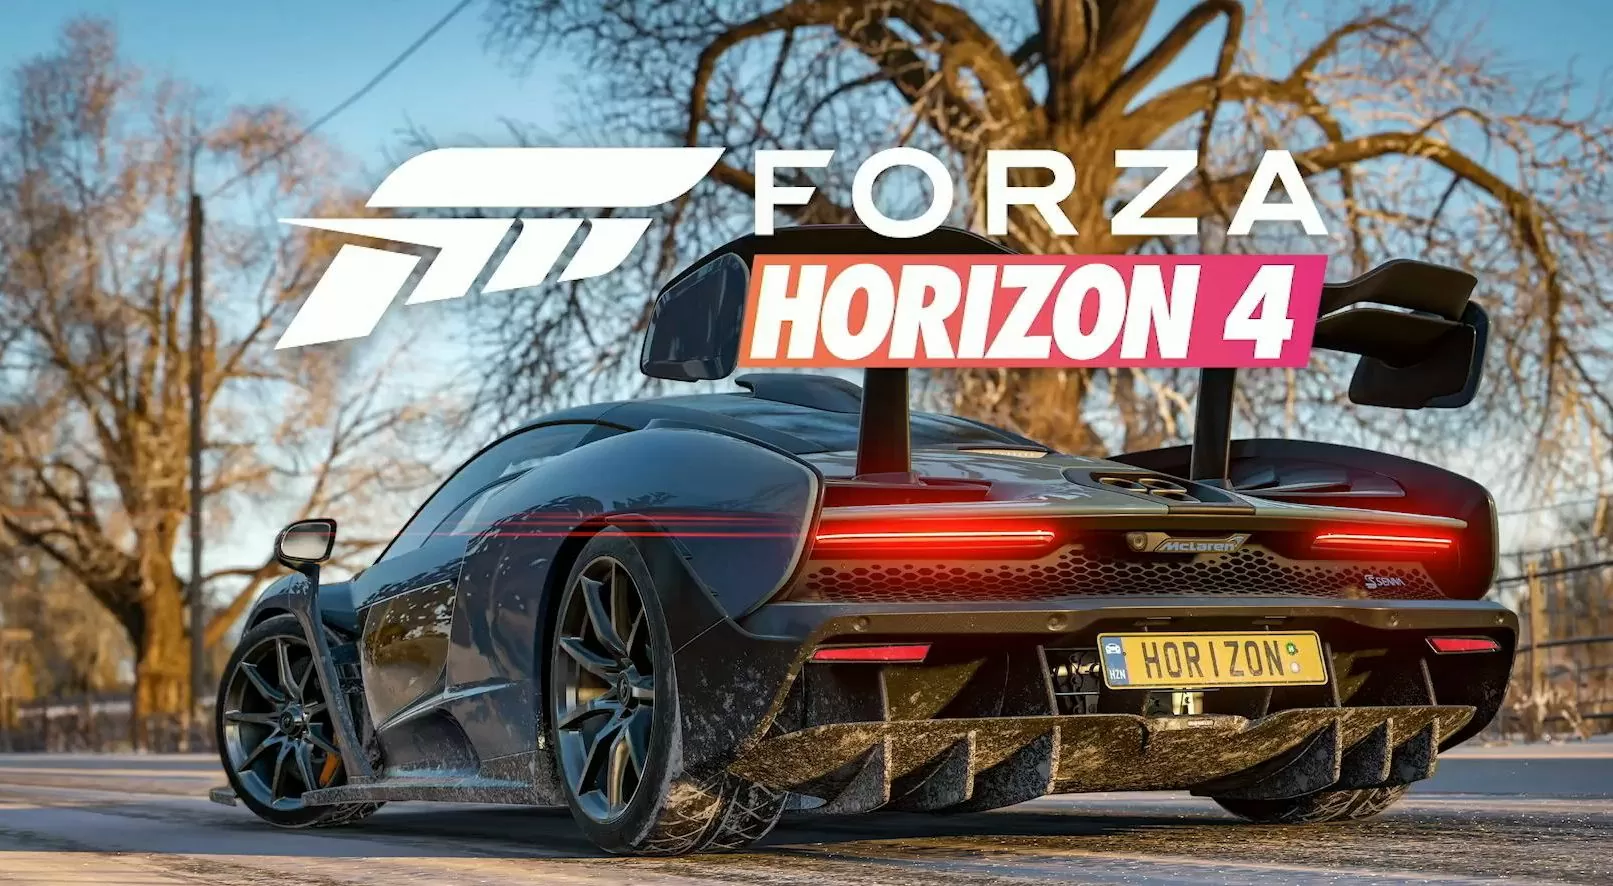 In arrivo la demo di Forza Horizon 4